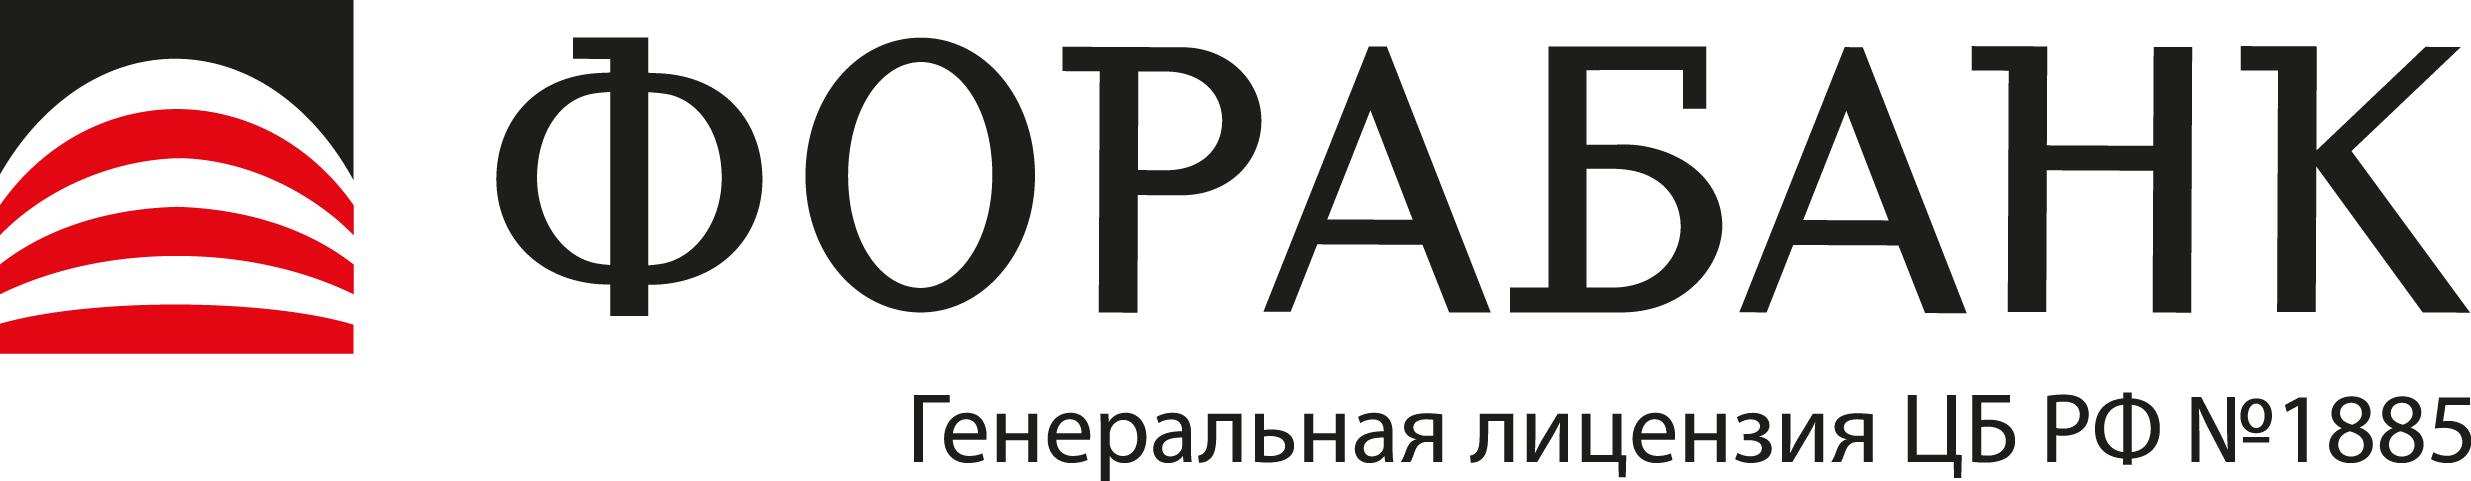 Фора-Банк откроет 10 новых отделений в России в 2023 году  - фото 1